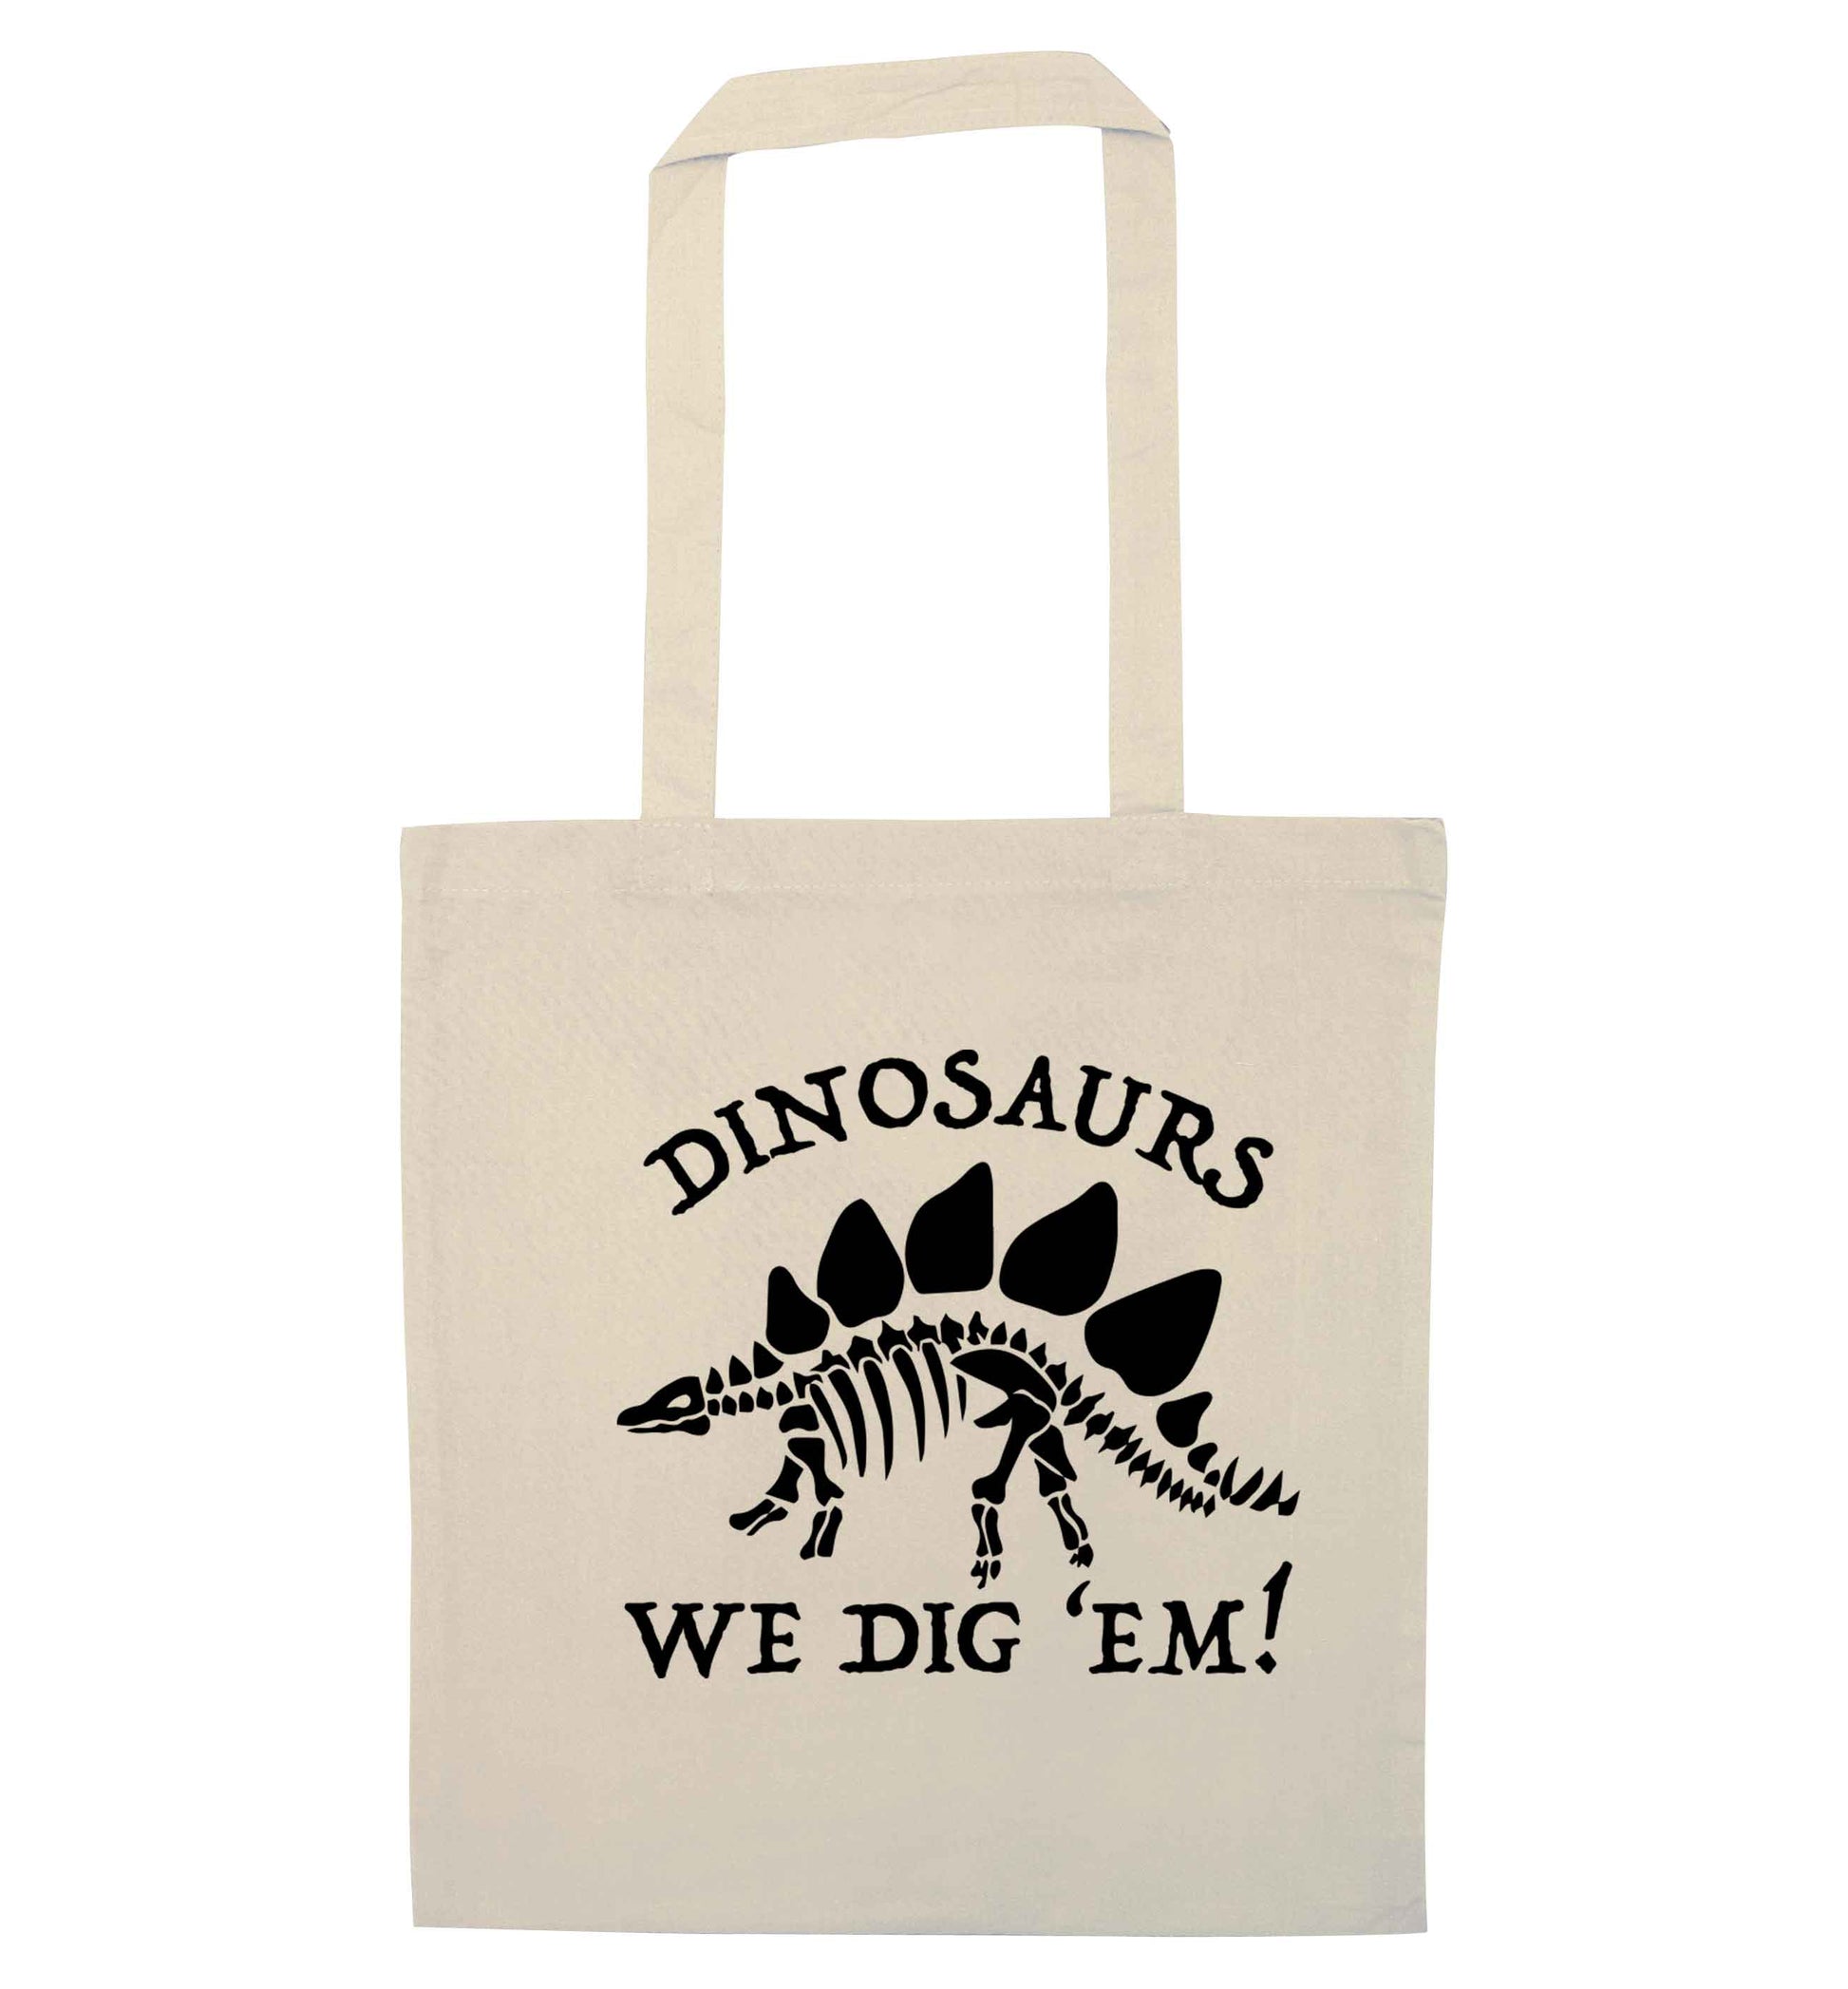 Dinosaurs we dig 'em! natural tote bag